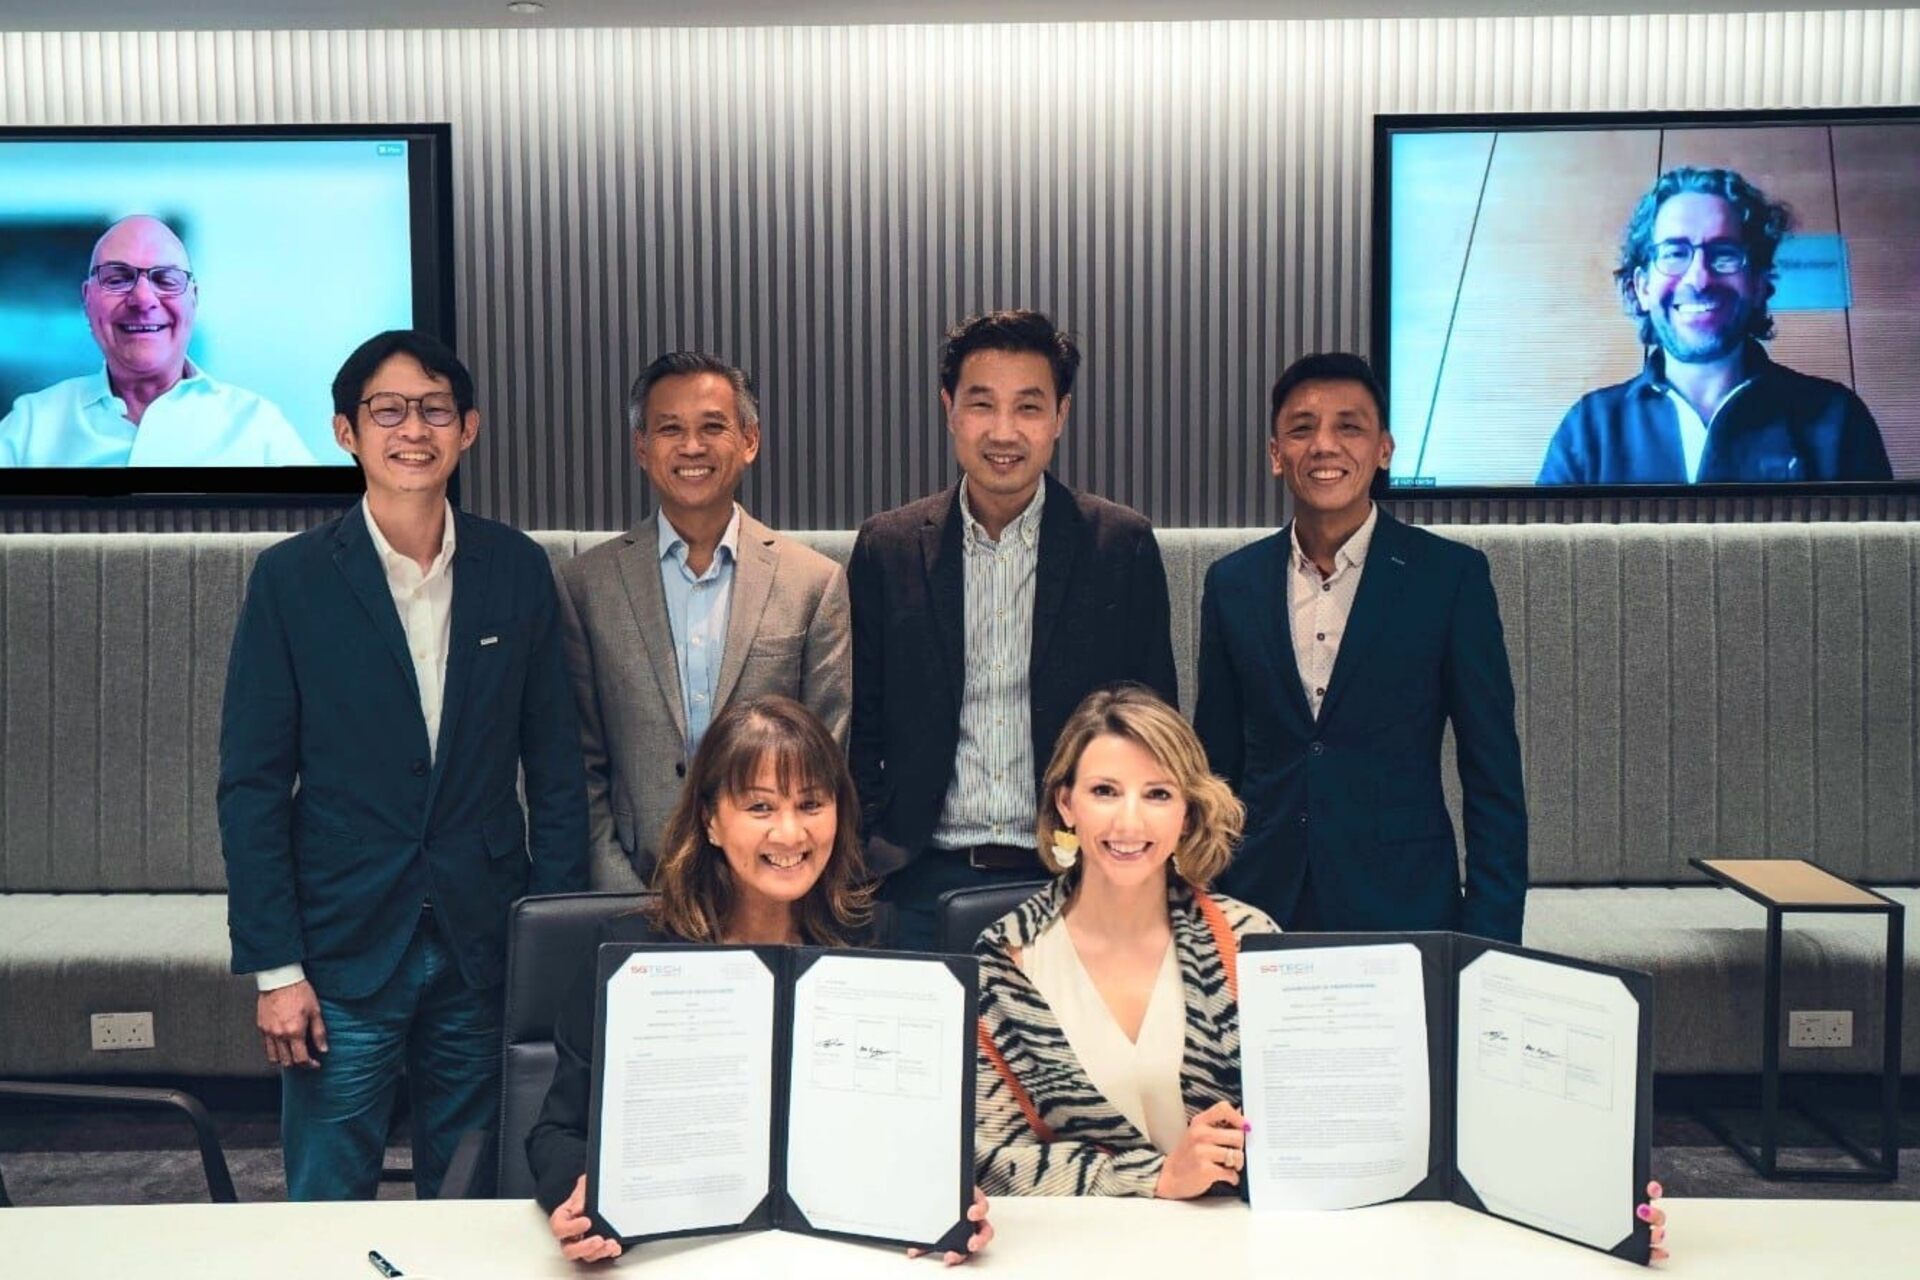 digitalswitzerland: Yean Cheong, di SGTech a Singapore, e Diana Engetschwiler, di digitalswitzerland in Svizzera, hanno siglato un accordo di collaborazione nel quadro di un processo di internazionalizzazione